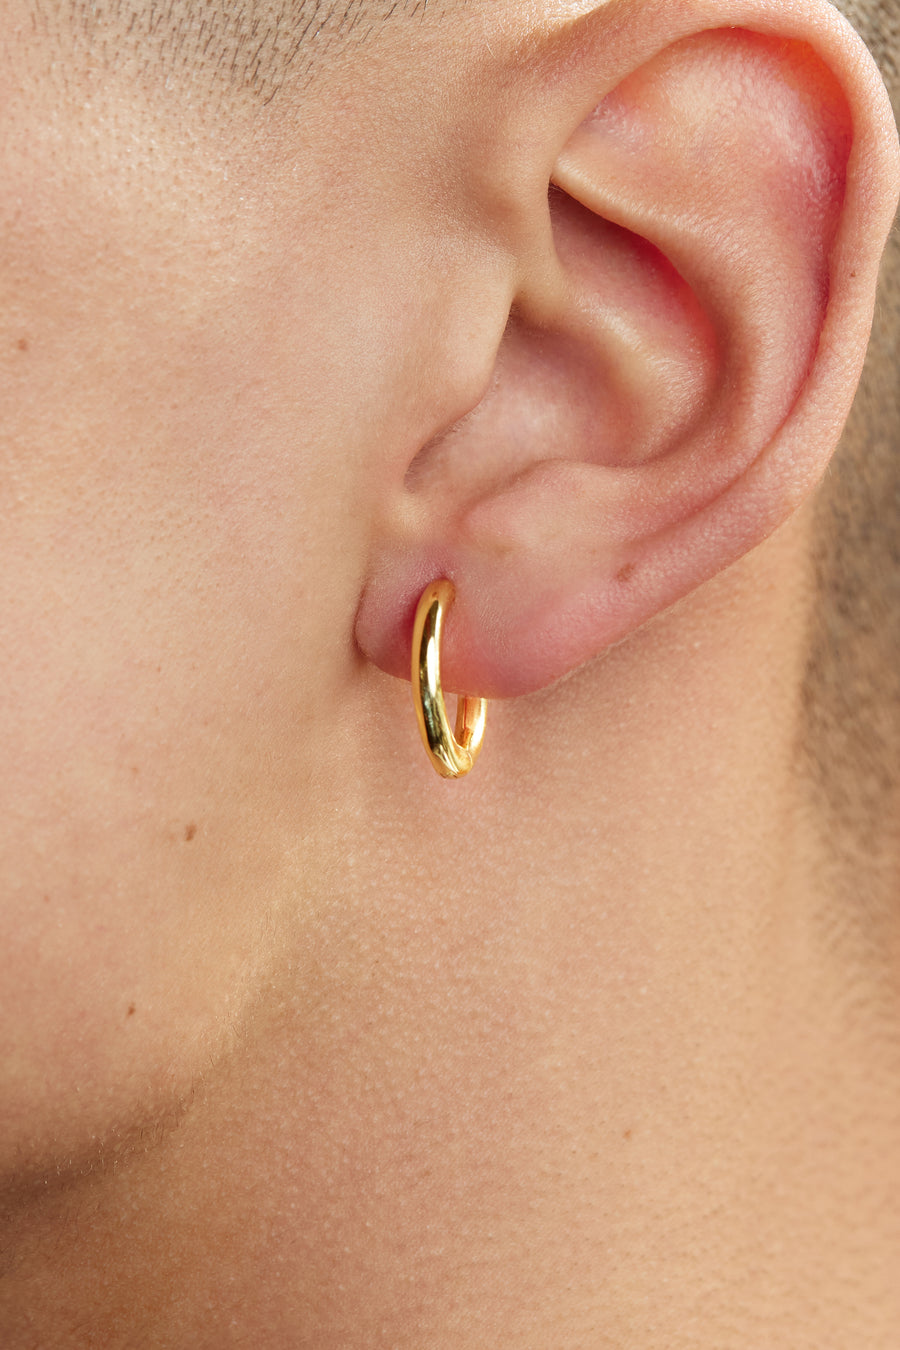 12mm Stainless Steel Hoop Earrings - 14K Gold